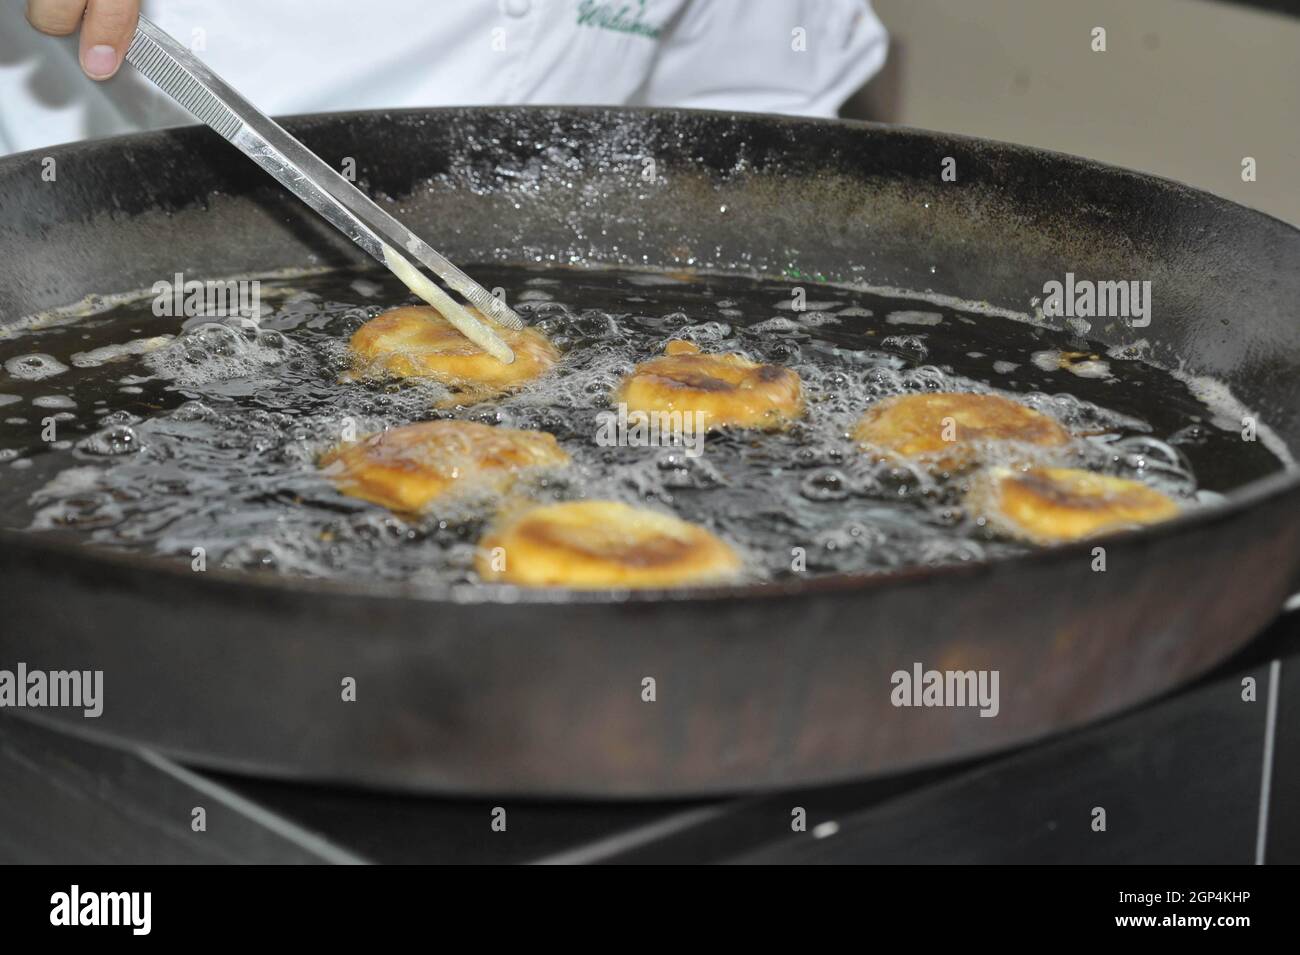 Frittieren von Snacks in Pflanzenöl in einer Pfanne Stockfotografie - Alamy